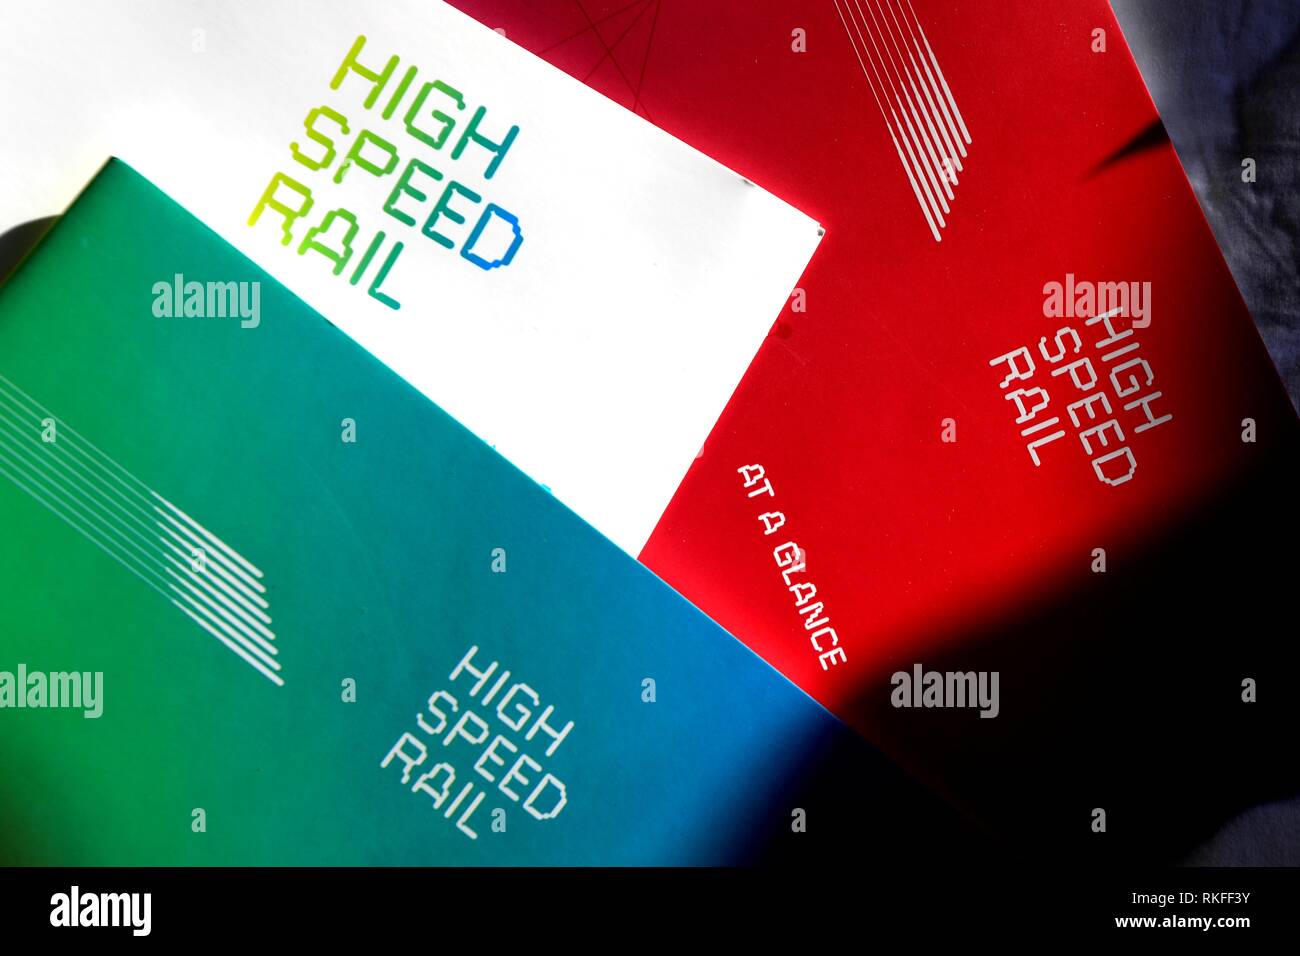 High Speed Rail 2, HS2, la littérature et l'image de marque . La grande vitesse ferroviaire pour les coûts de Londres à Birmingha, Manchester, Leeds et Crewe HS2 railway Banque D'Images